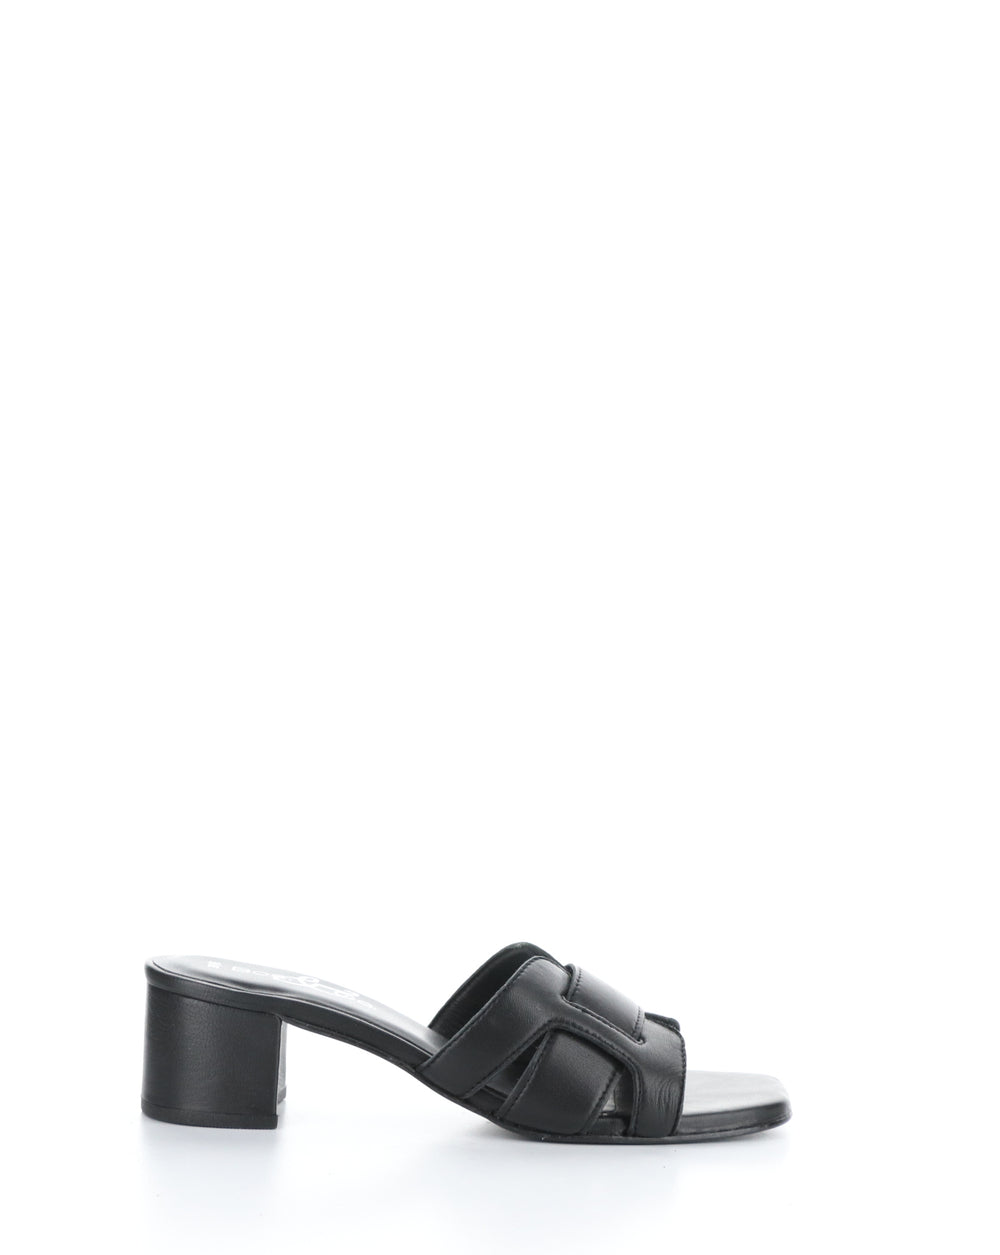 UPLIFT BLACK Slip-on Sandals